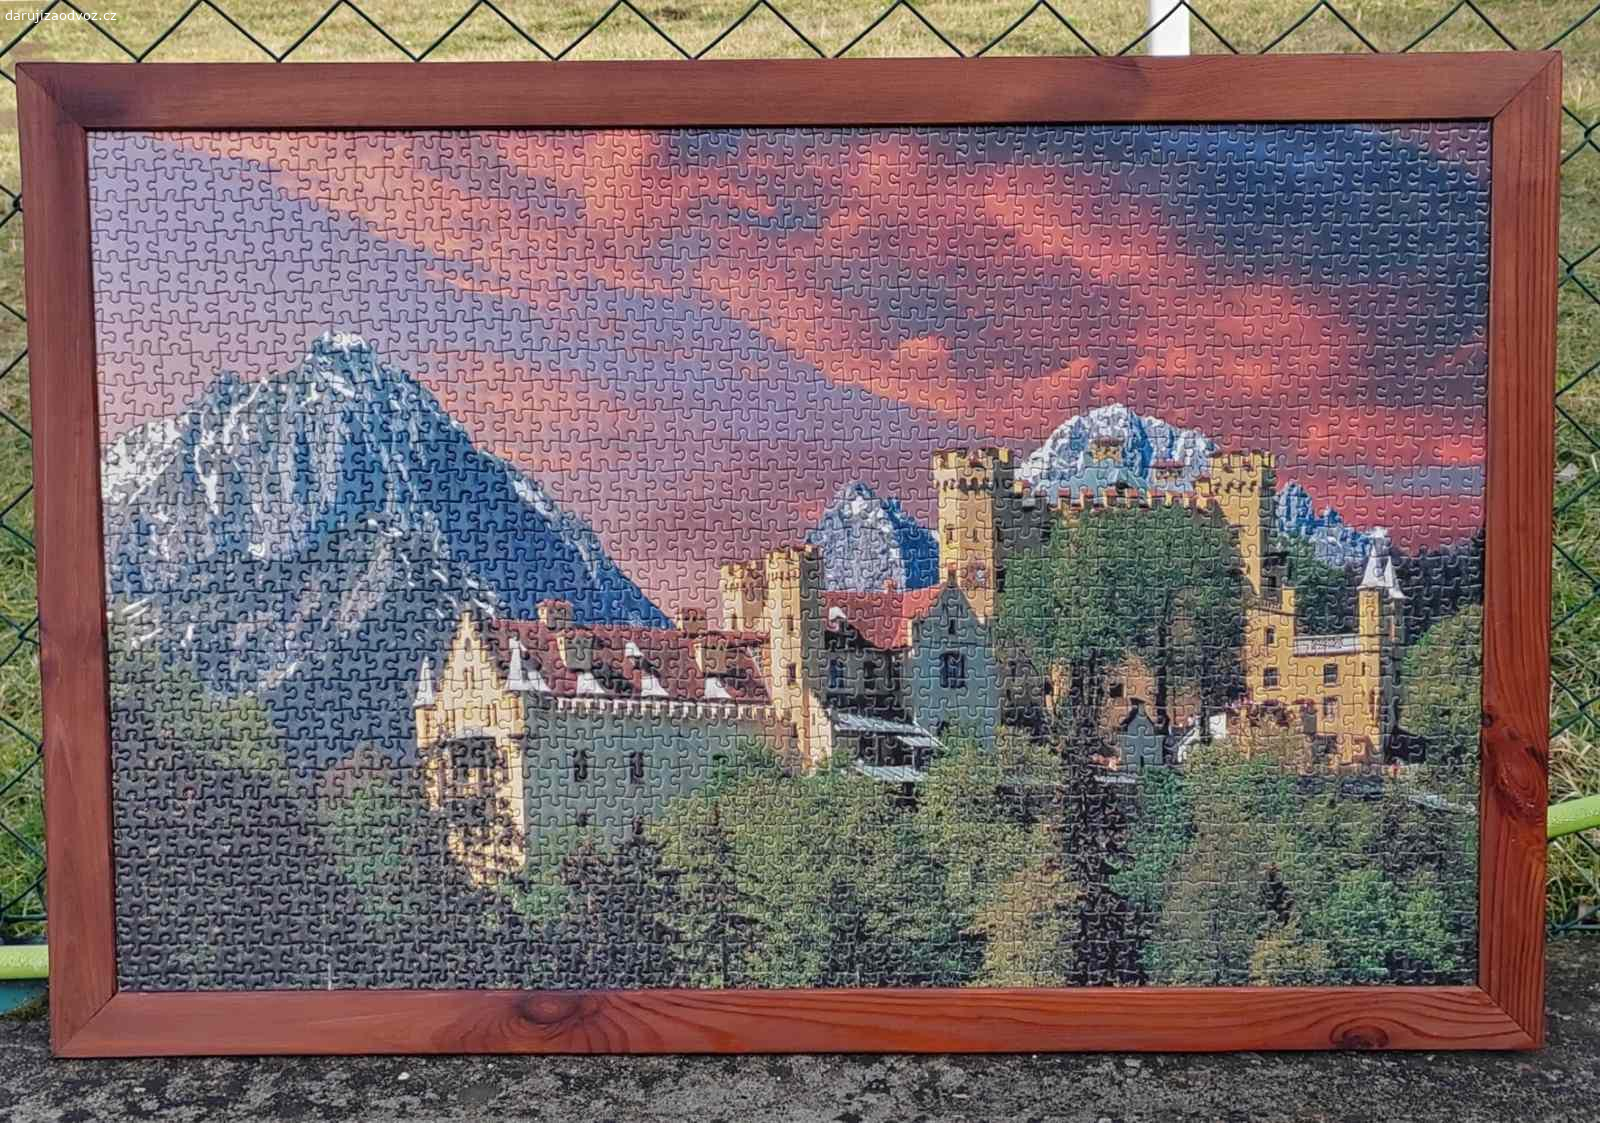 Puzzle nalepené v rámu. Daruji za odvoz, aby to udělalo radost:) Složené puzzle 1500 dílků. Bavorský zámek Hohenschwangau. Celkový rozměr 91x60cm. Podklad sololit. Rám dřevěný tmavě mořený s háčky na pověšení.